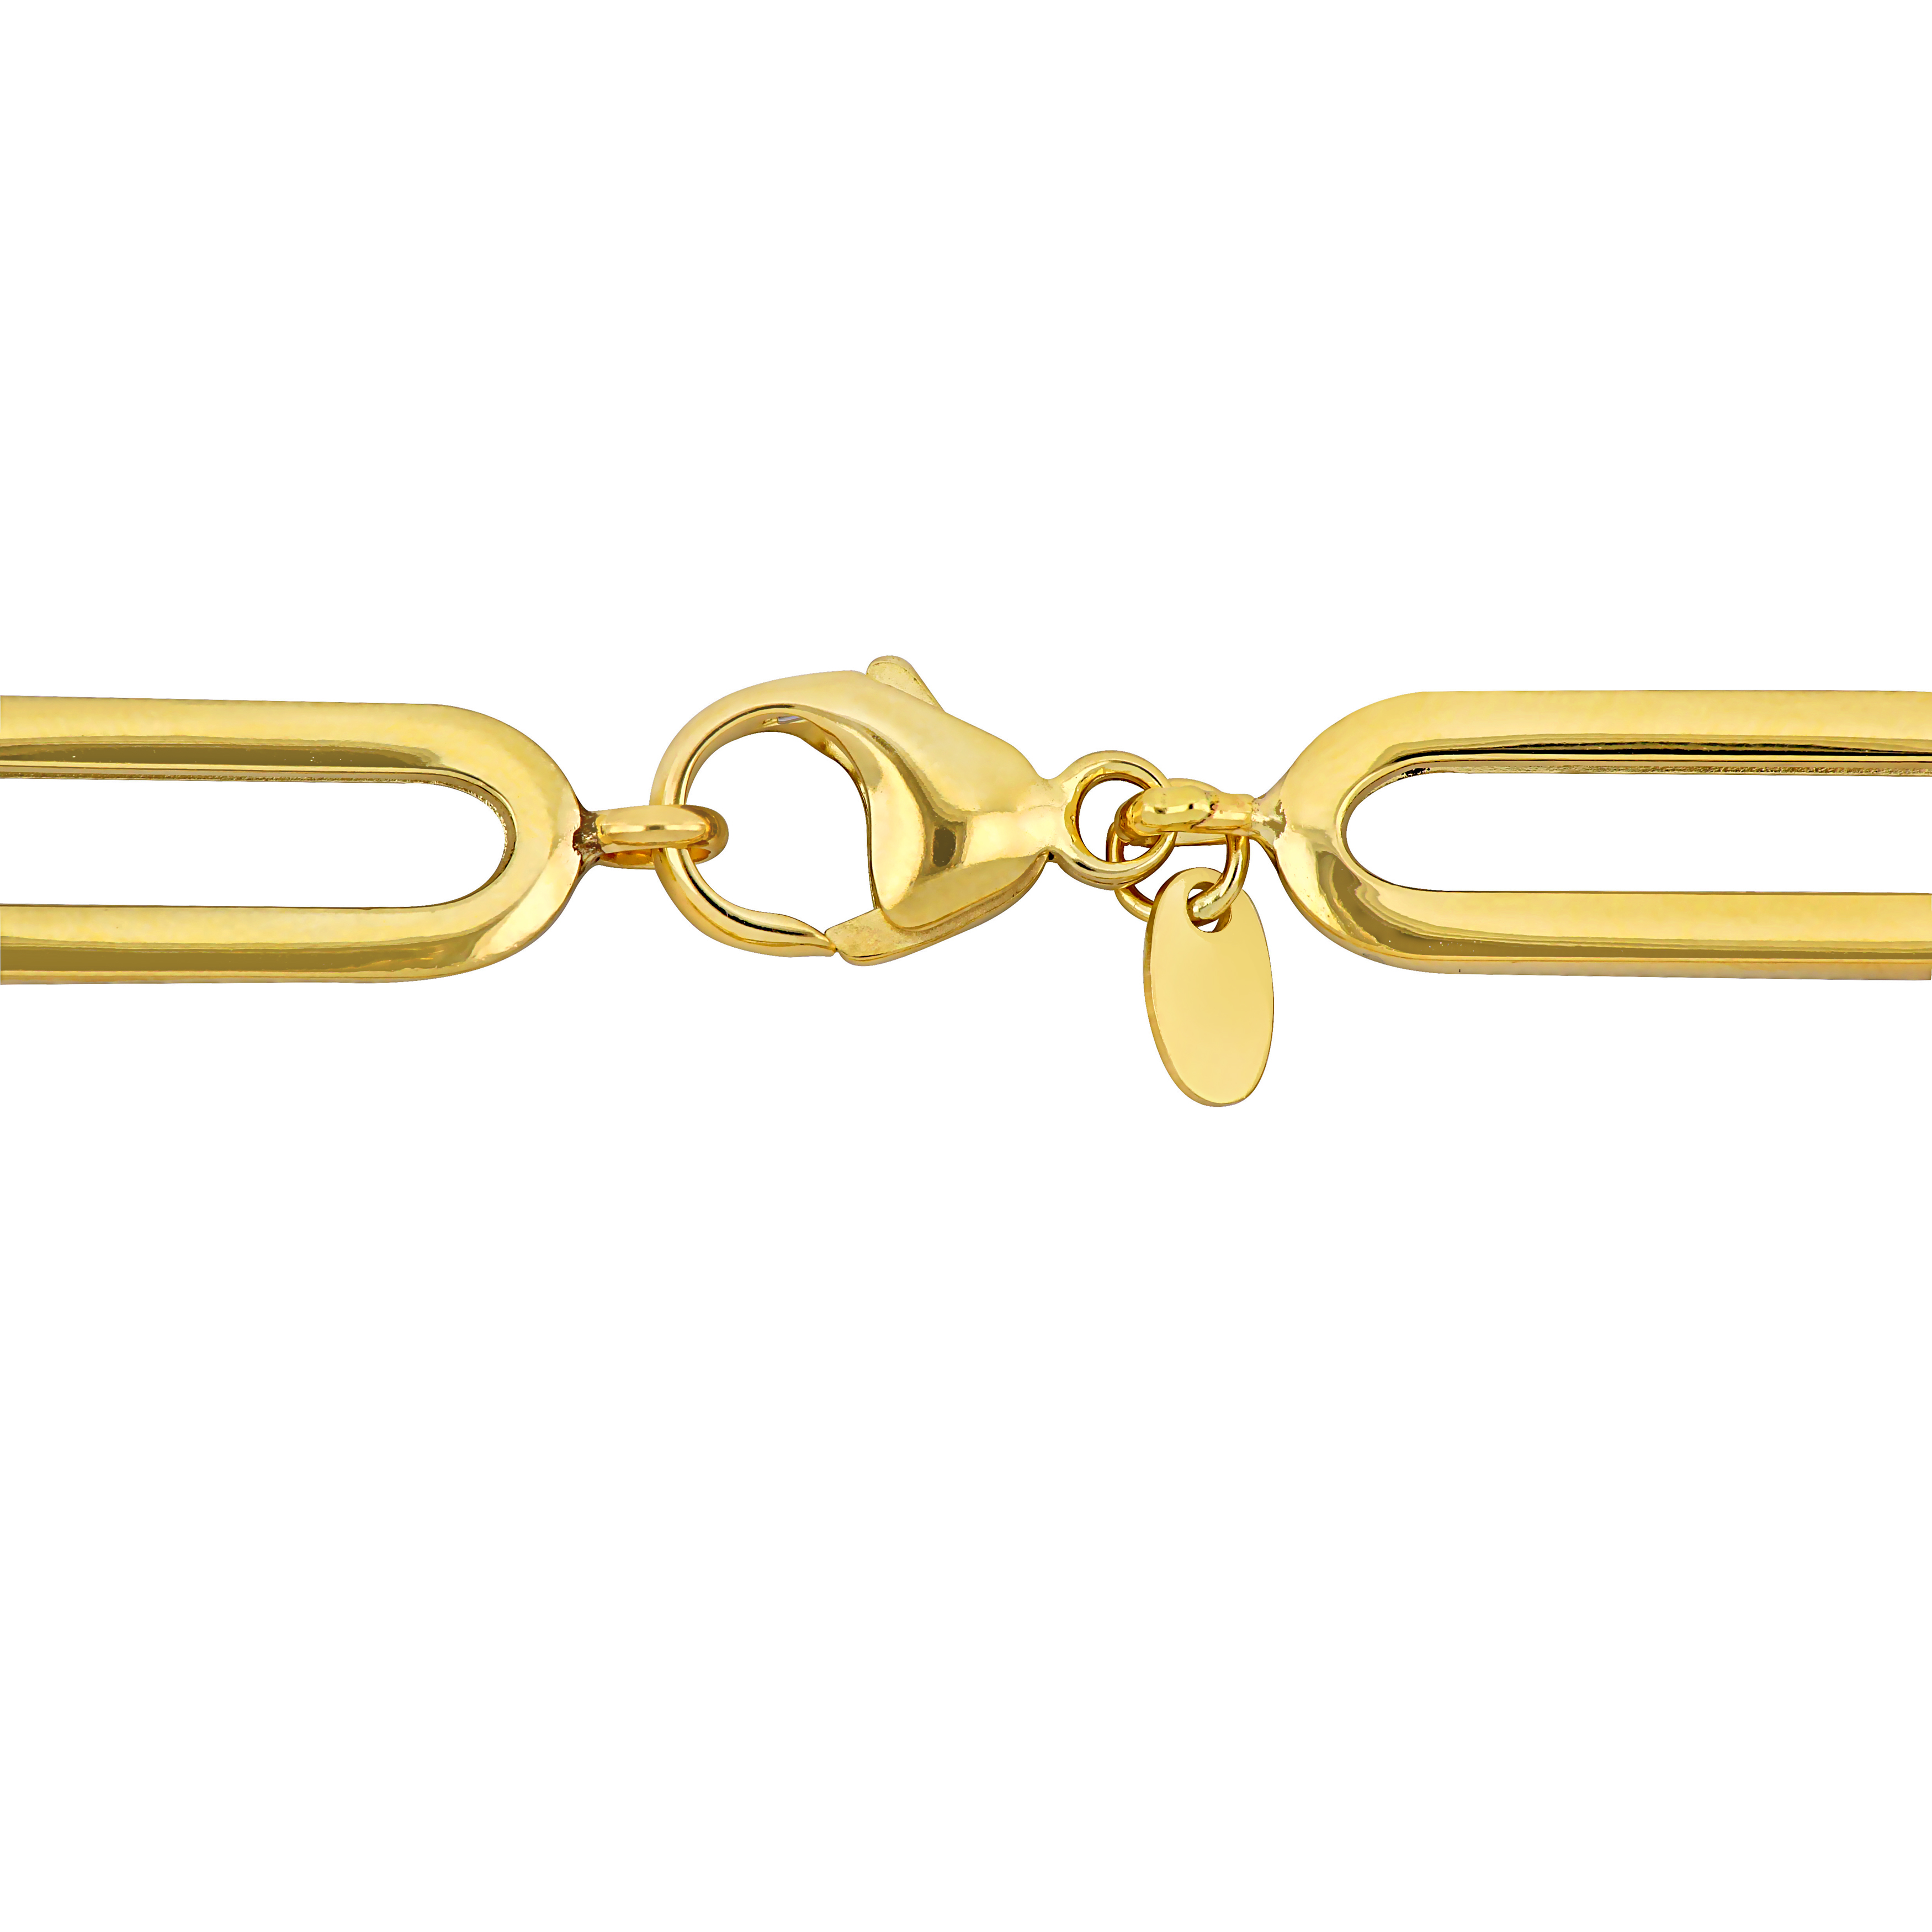 Oval Link Bracelet in 14K Yellow Gold - 8 in.